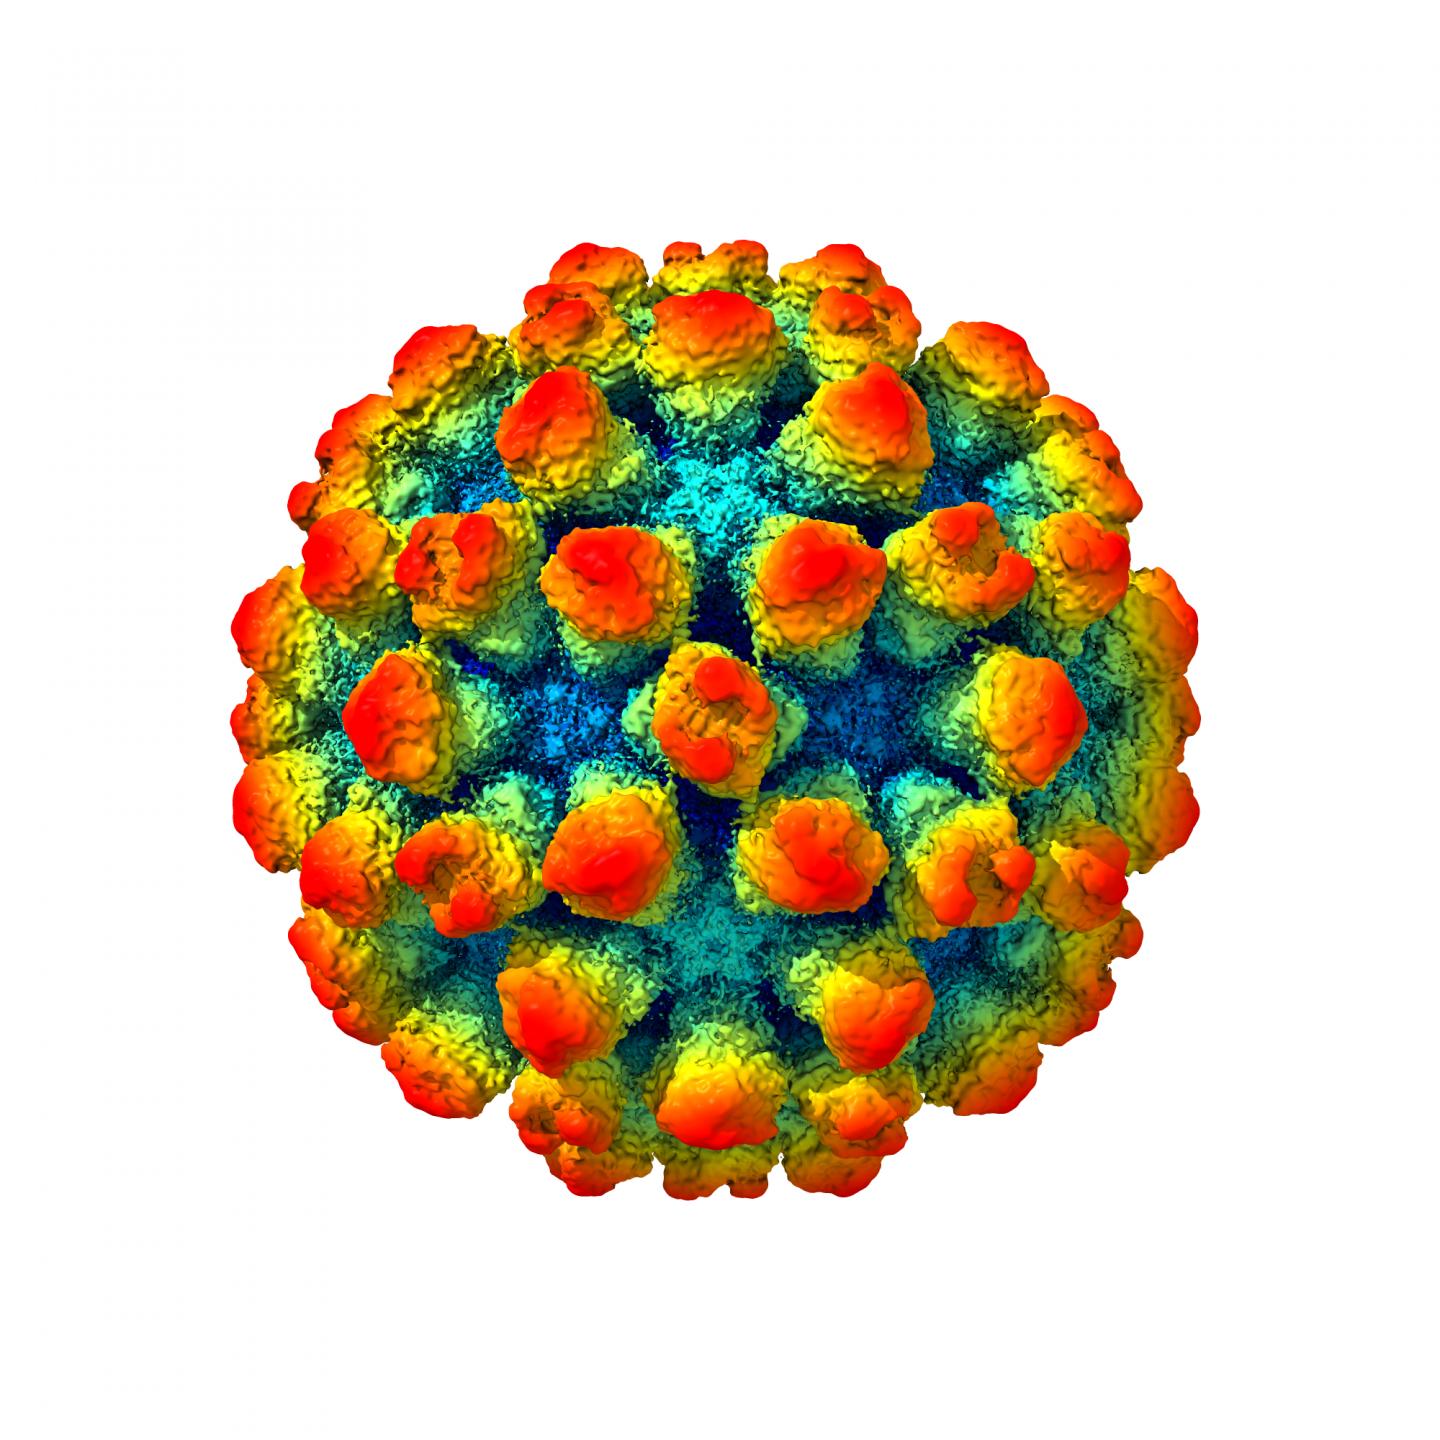 Image of the Murine Norovirus